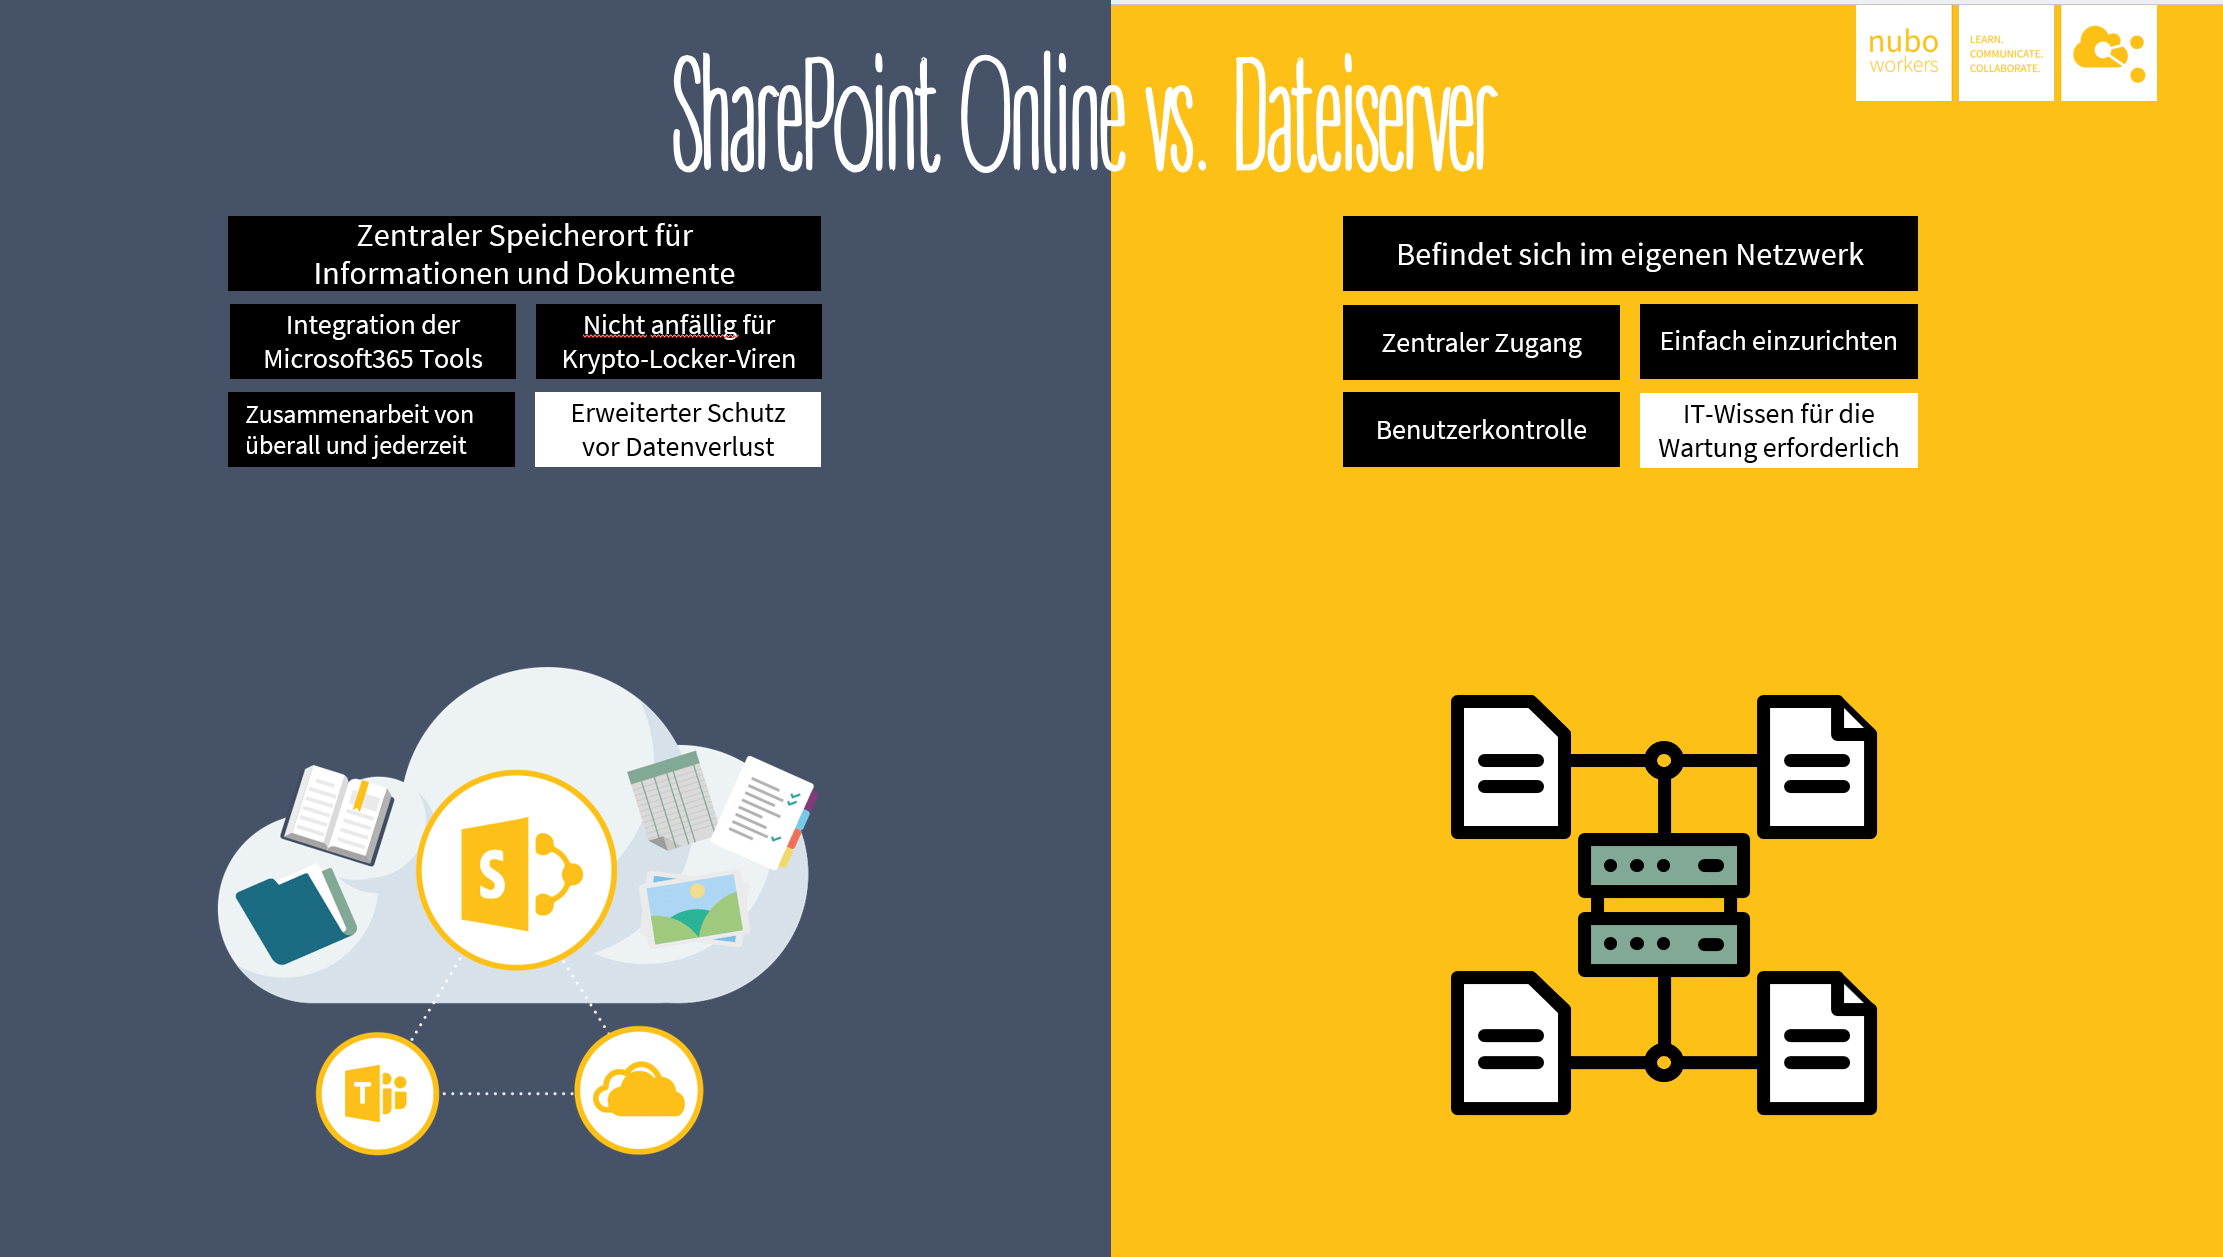 SharePoint online vs. Dateiserver